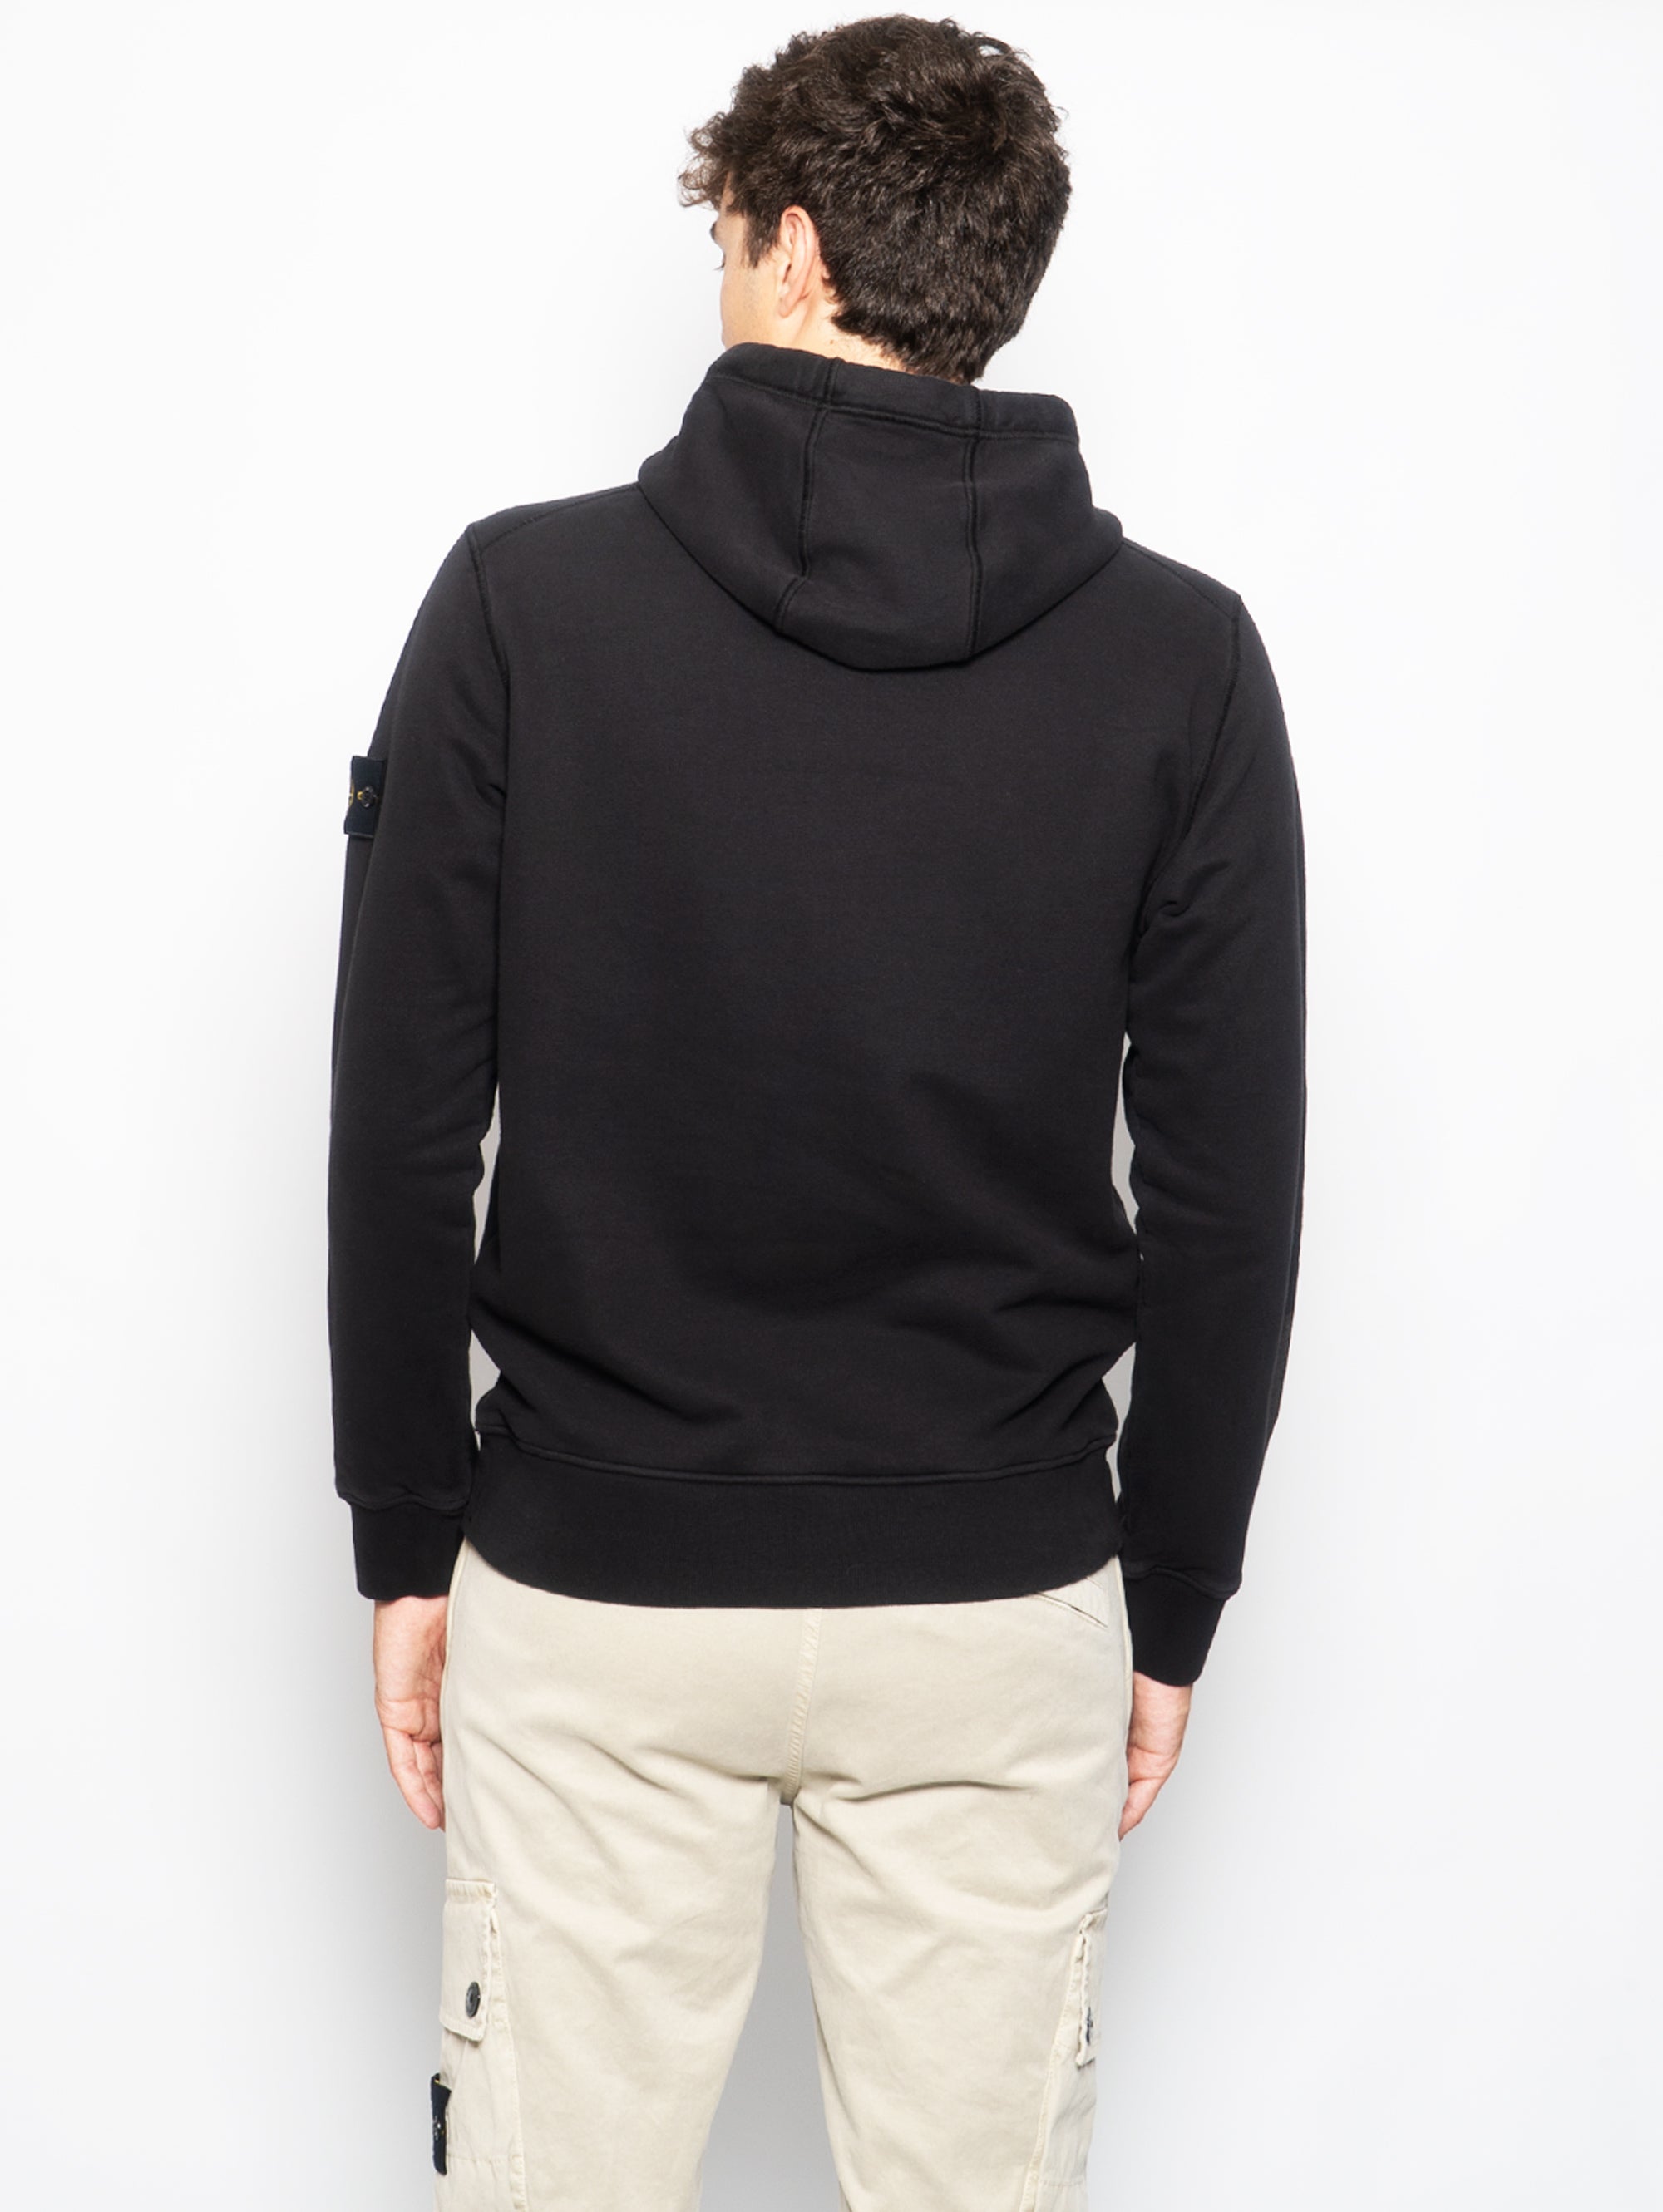 Sweatshirt mit Kapuze und reflektierenden Details Schwarz